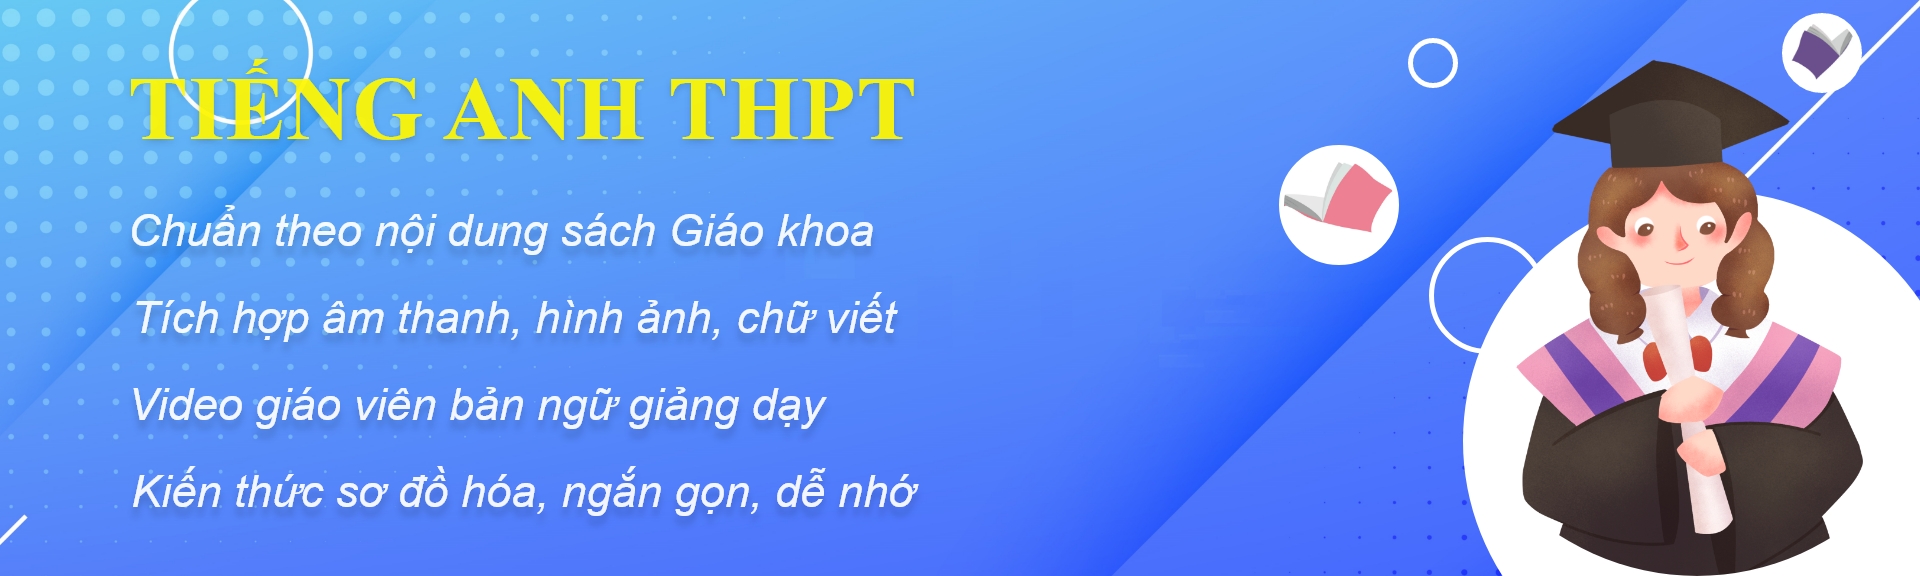 Giới thiệu về tiếng Anh THPT Vmied